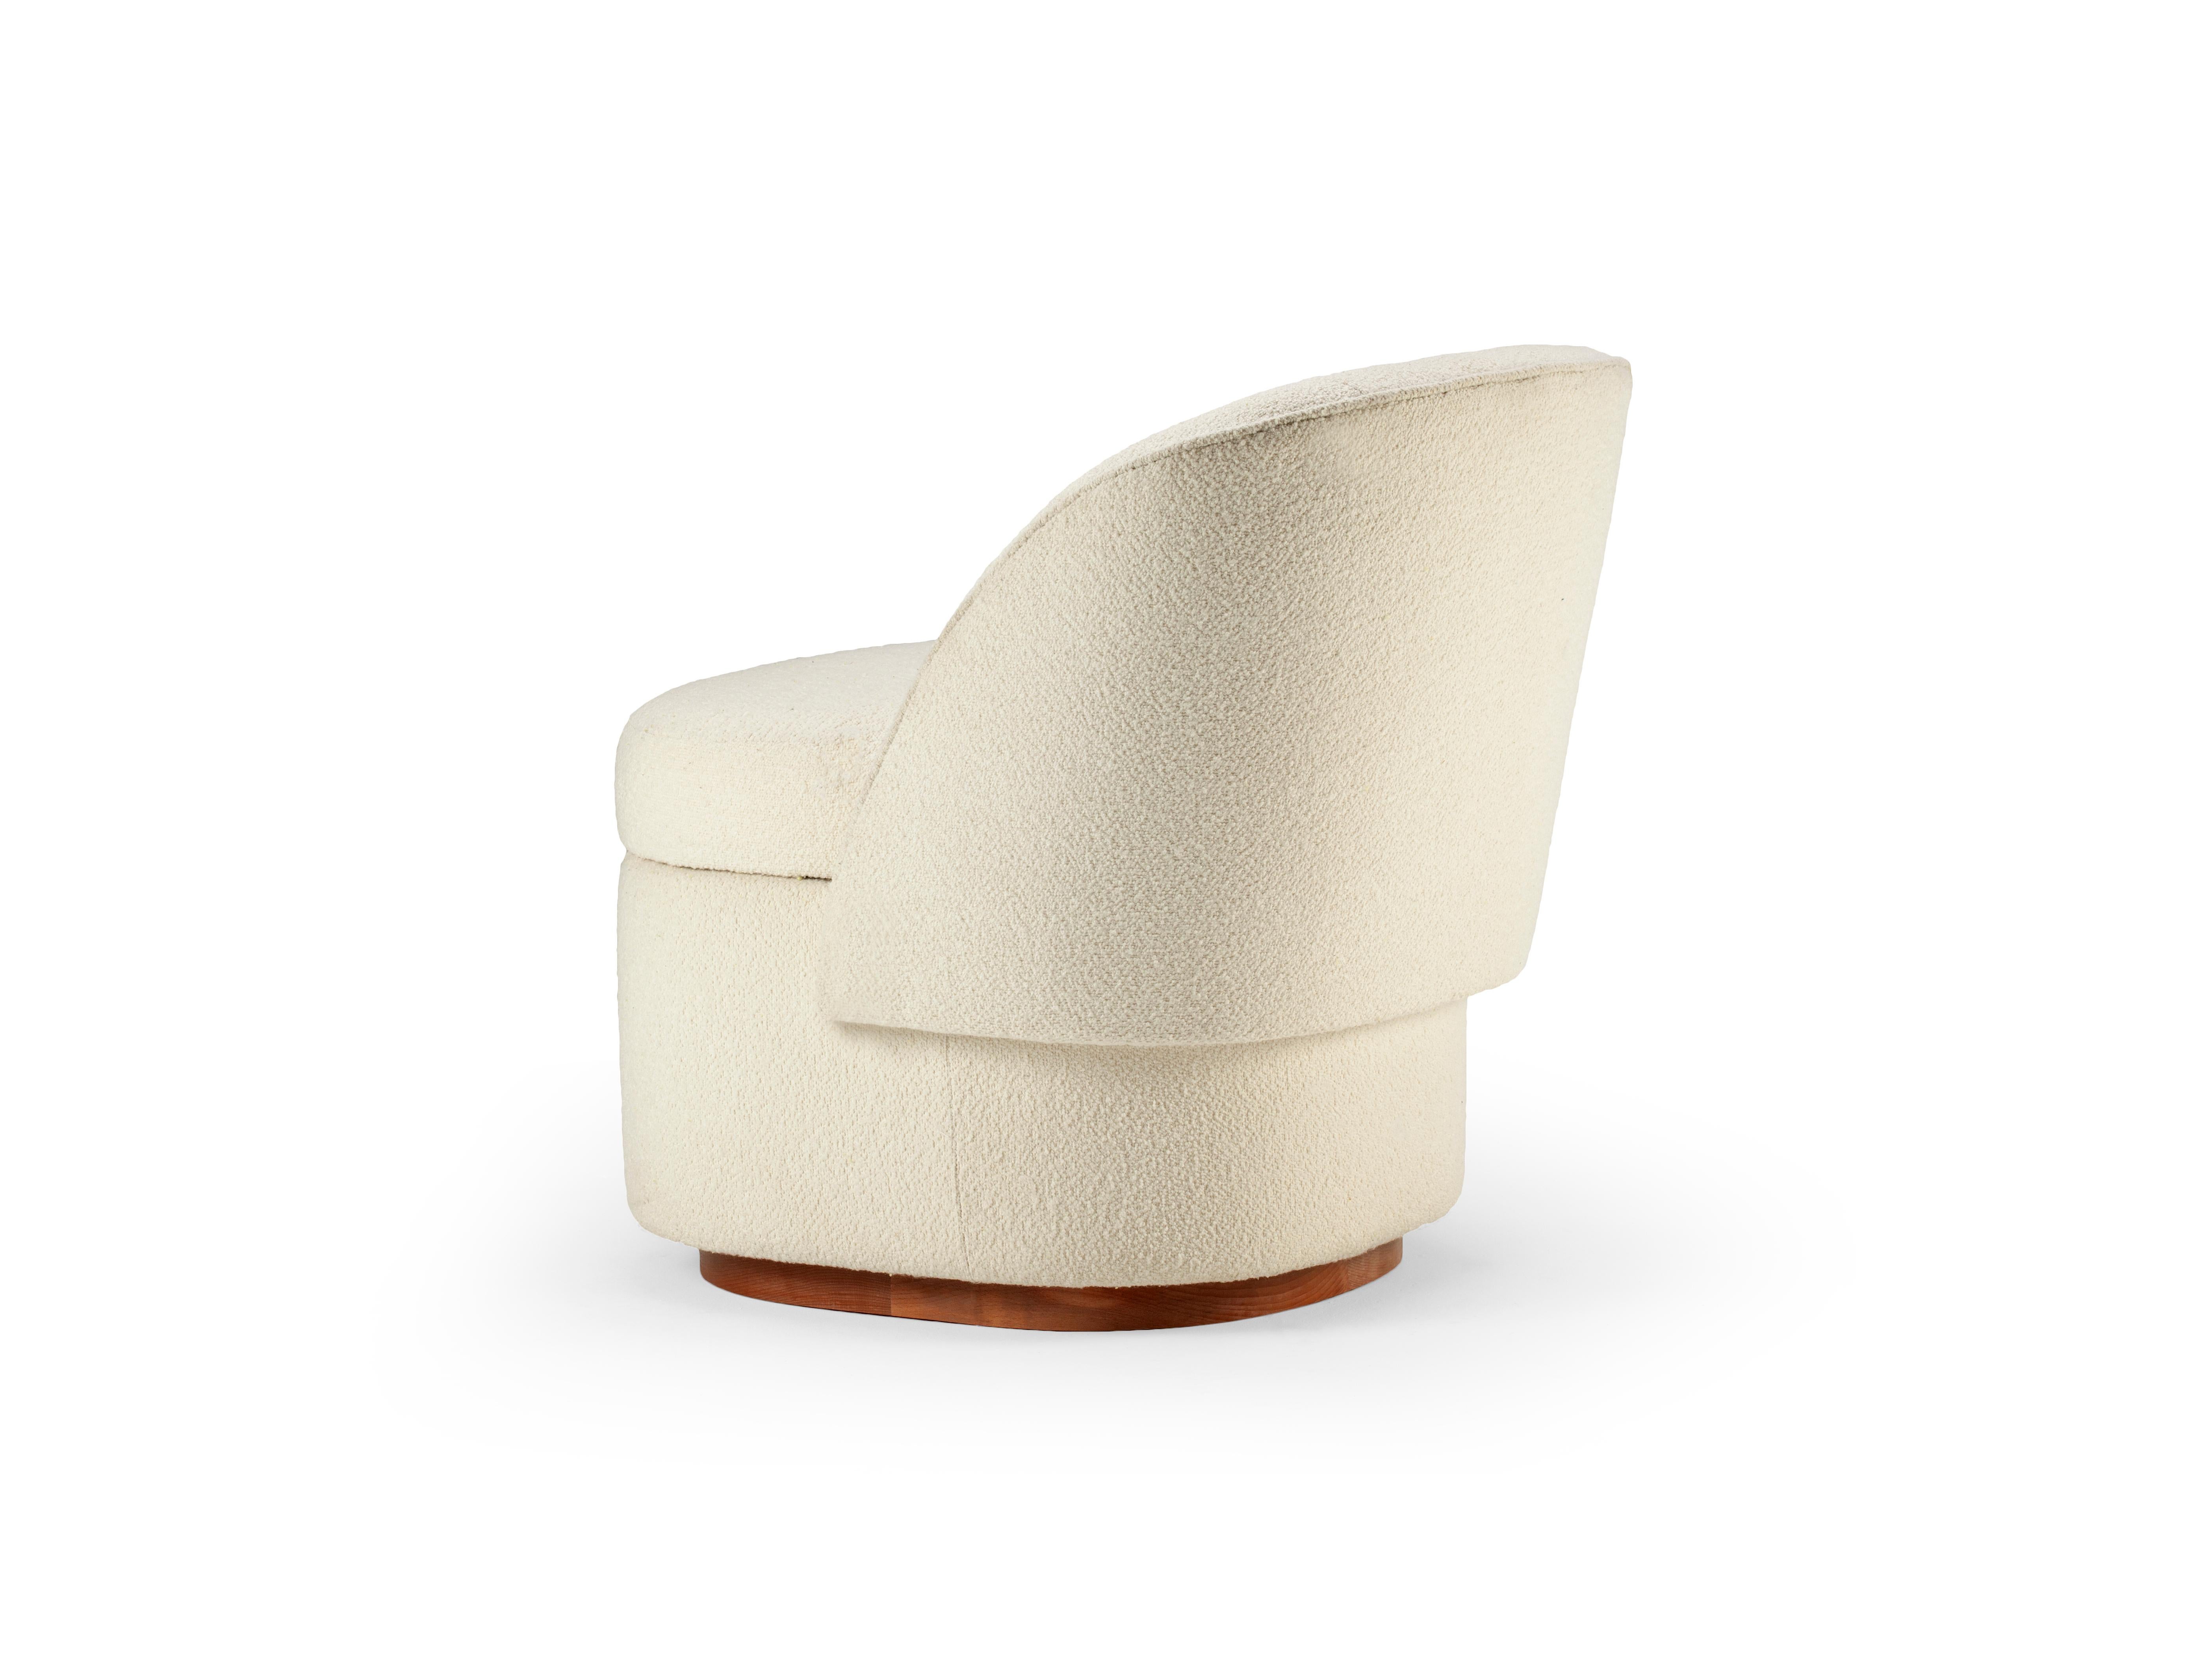 Schwungvolle Kurven, sanft zurückspringende Armlehnen und eine skulpturale Form definieren den Bisou Sessel. Die straffe, aber weiche Sitzfläche und Rückenlehne sowie die sauberen Nähte verleihen diesem Möbelstück ein klares, maßgeschneidertes